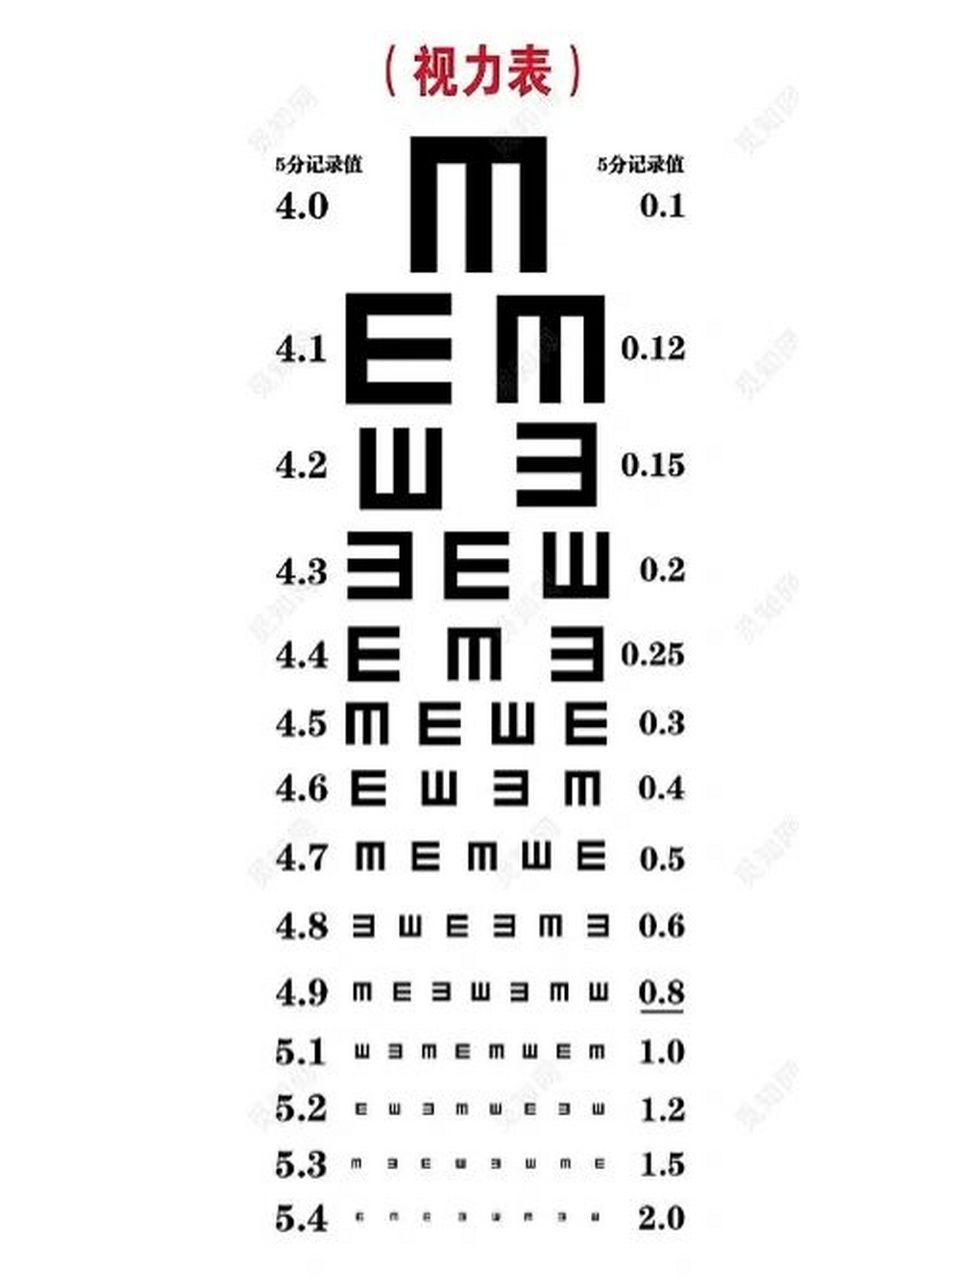 视力表代表近视多少度? 01/40 近视度数650度 012/4